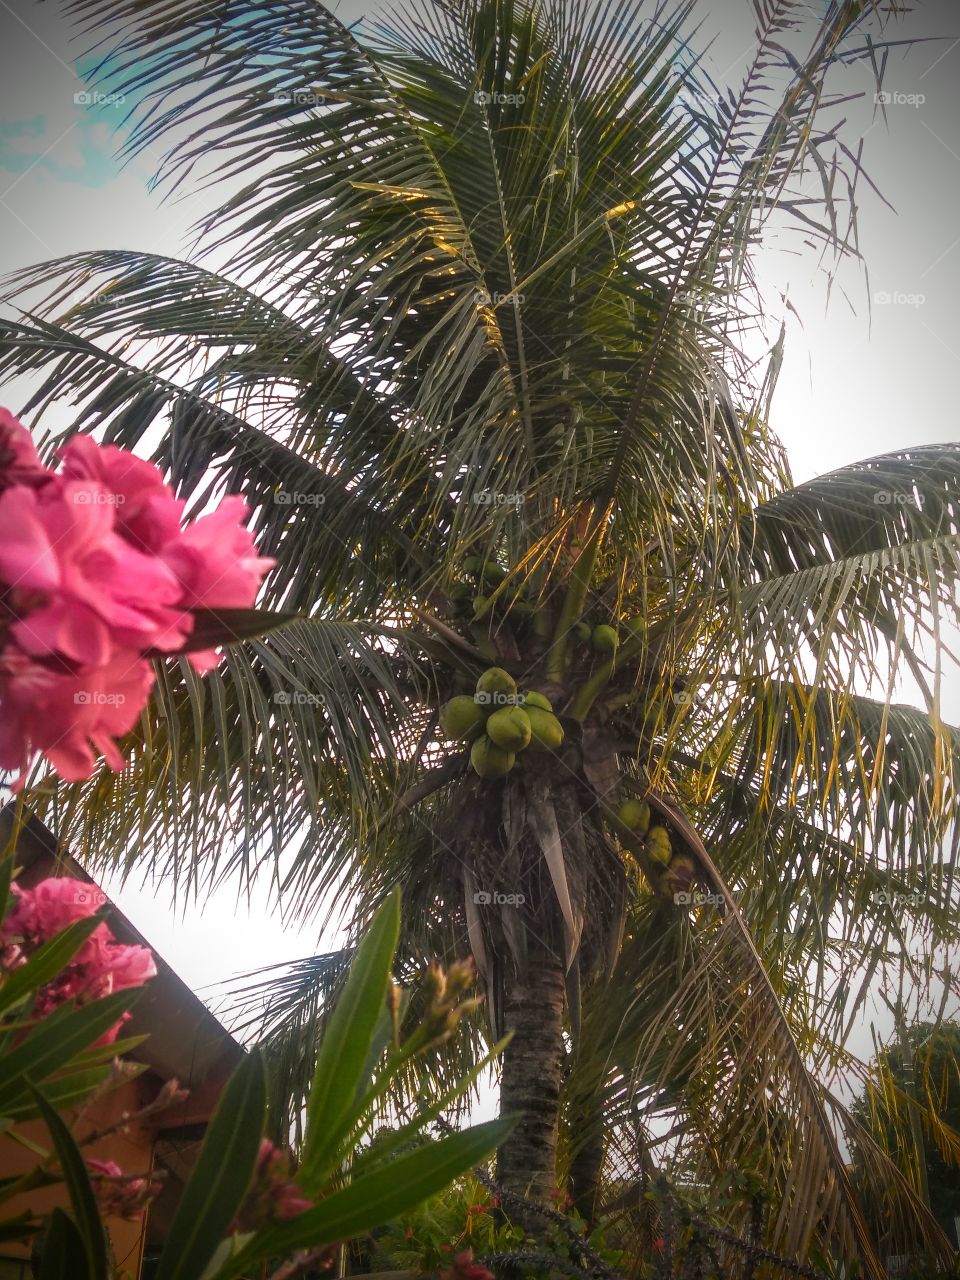 Coconut tree. Flower. Sky. Wind./ Coqueiro. Flores. Céu. Vento.